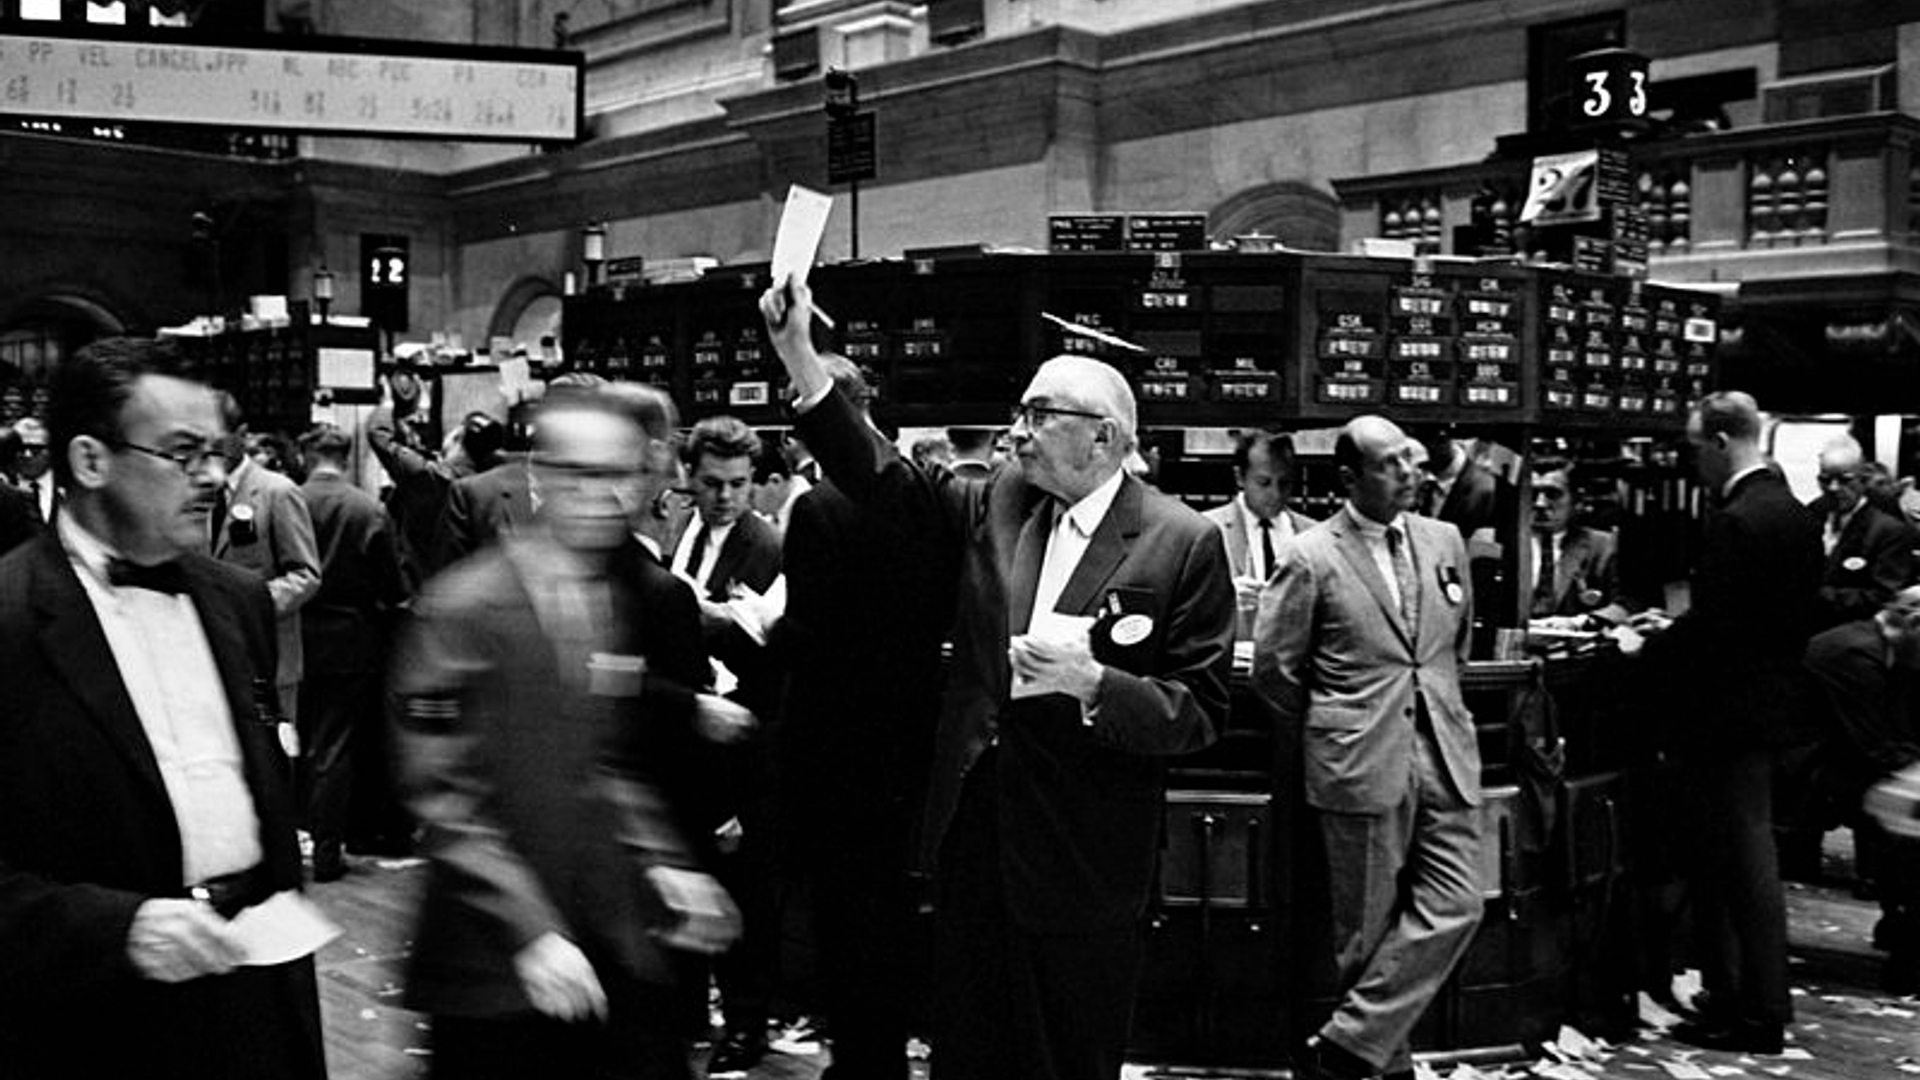 800px-NY_stock_exchange_traders_floor_LC-U9-10548-6